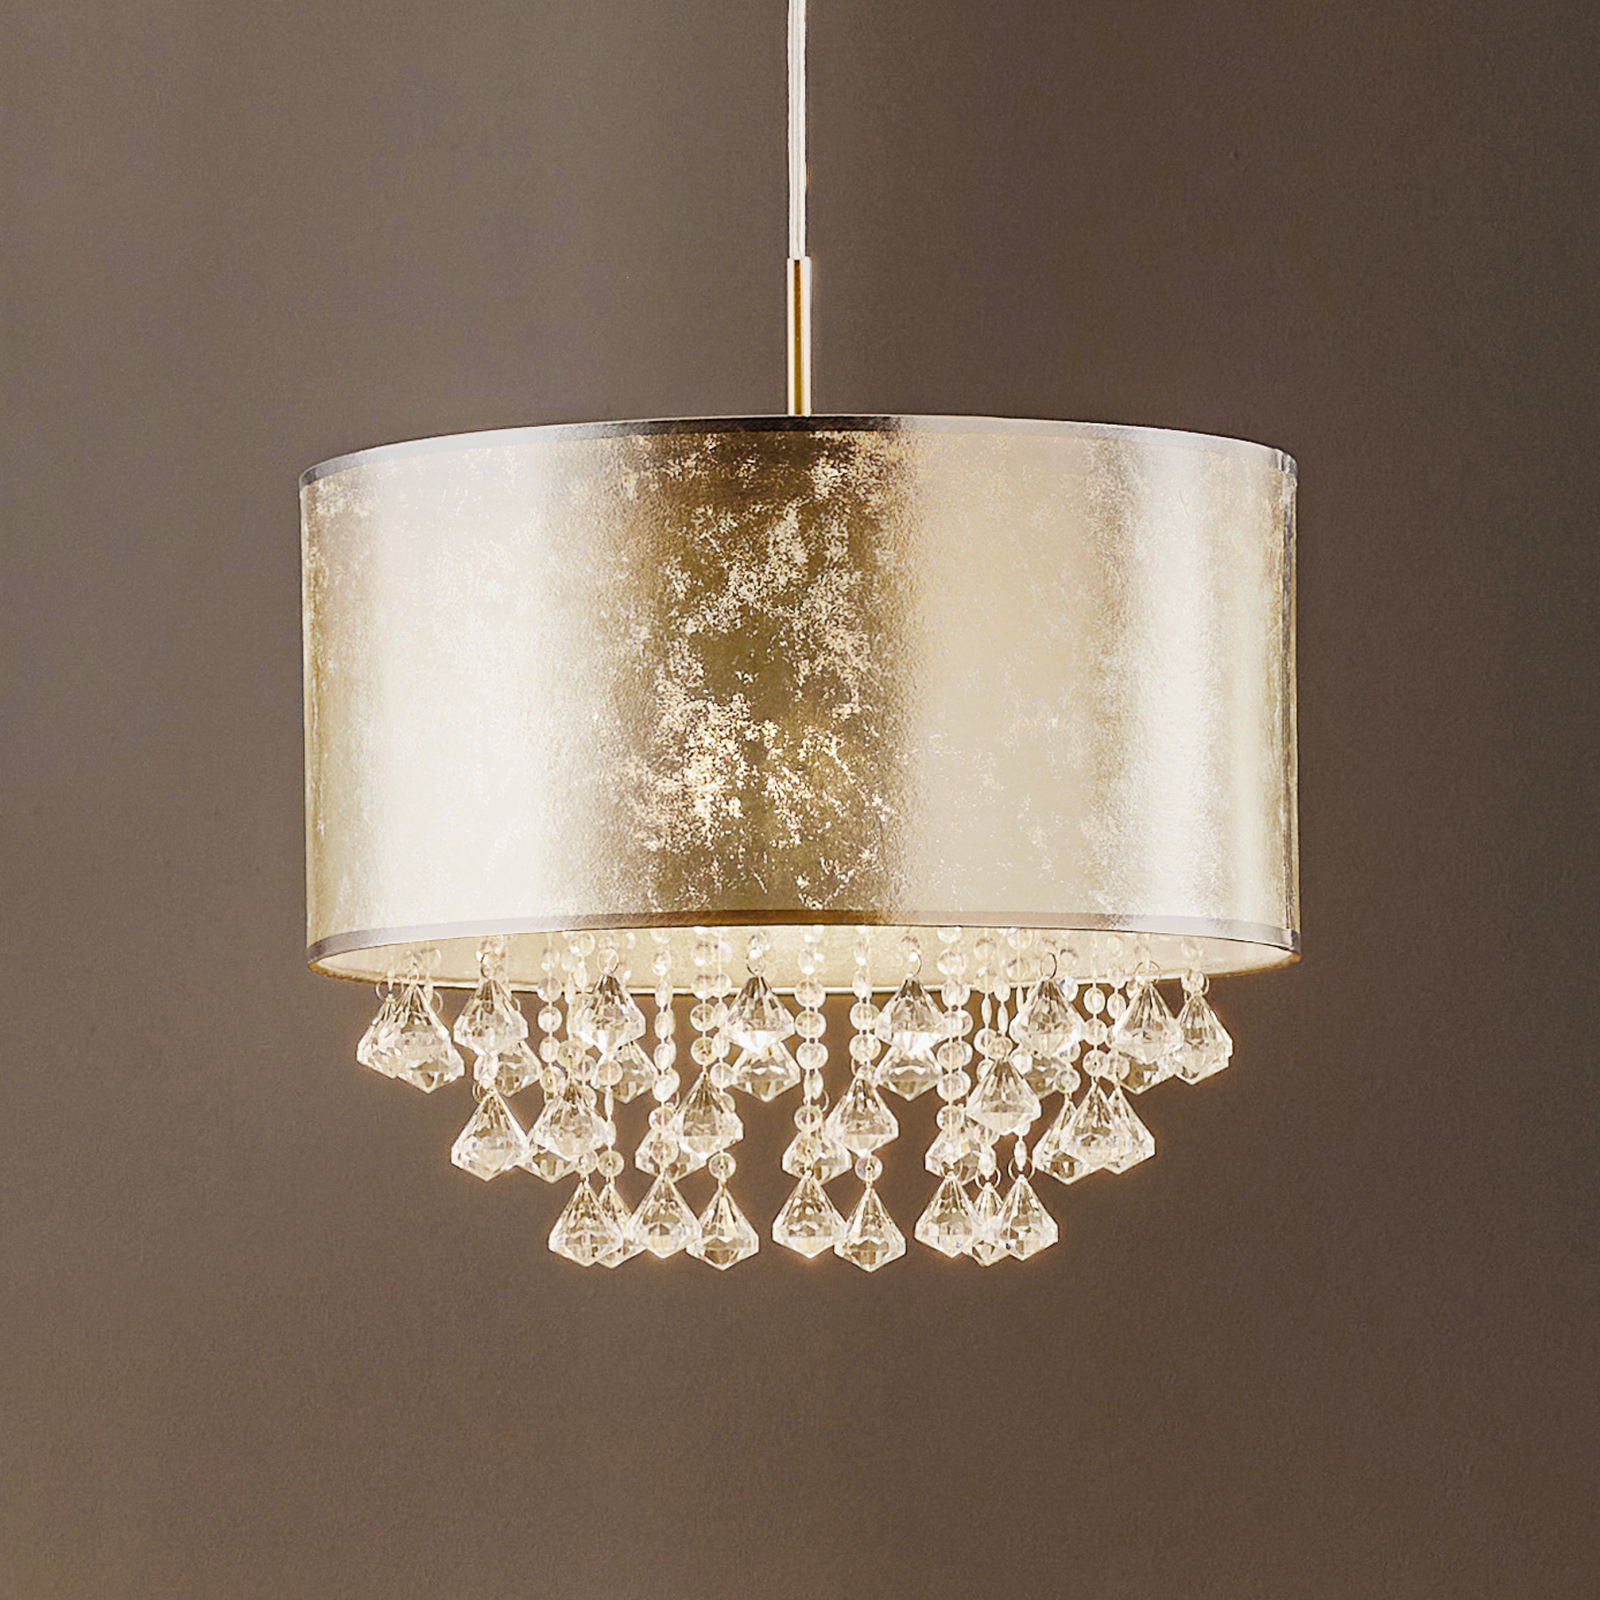 Meenemen bevel vuist Amy - stoffen hanglamp in zilver met ornamenten | Lampen24.nl